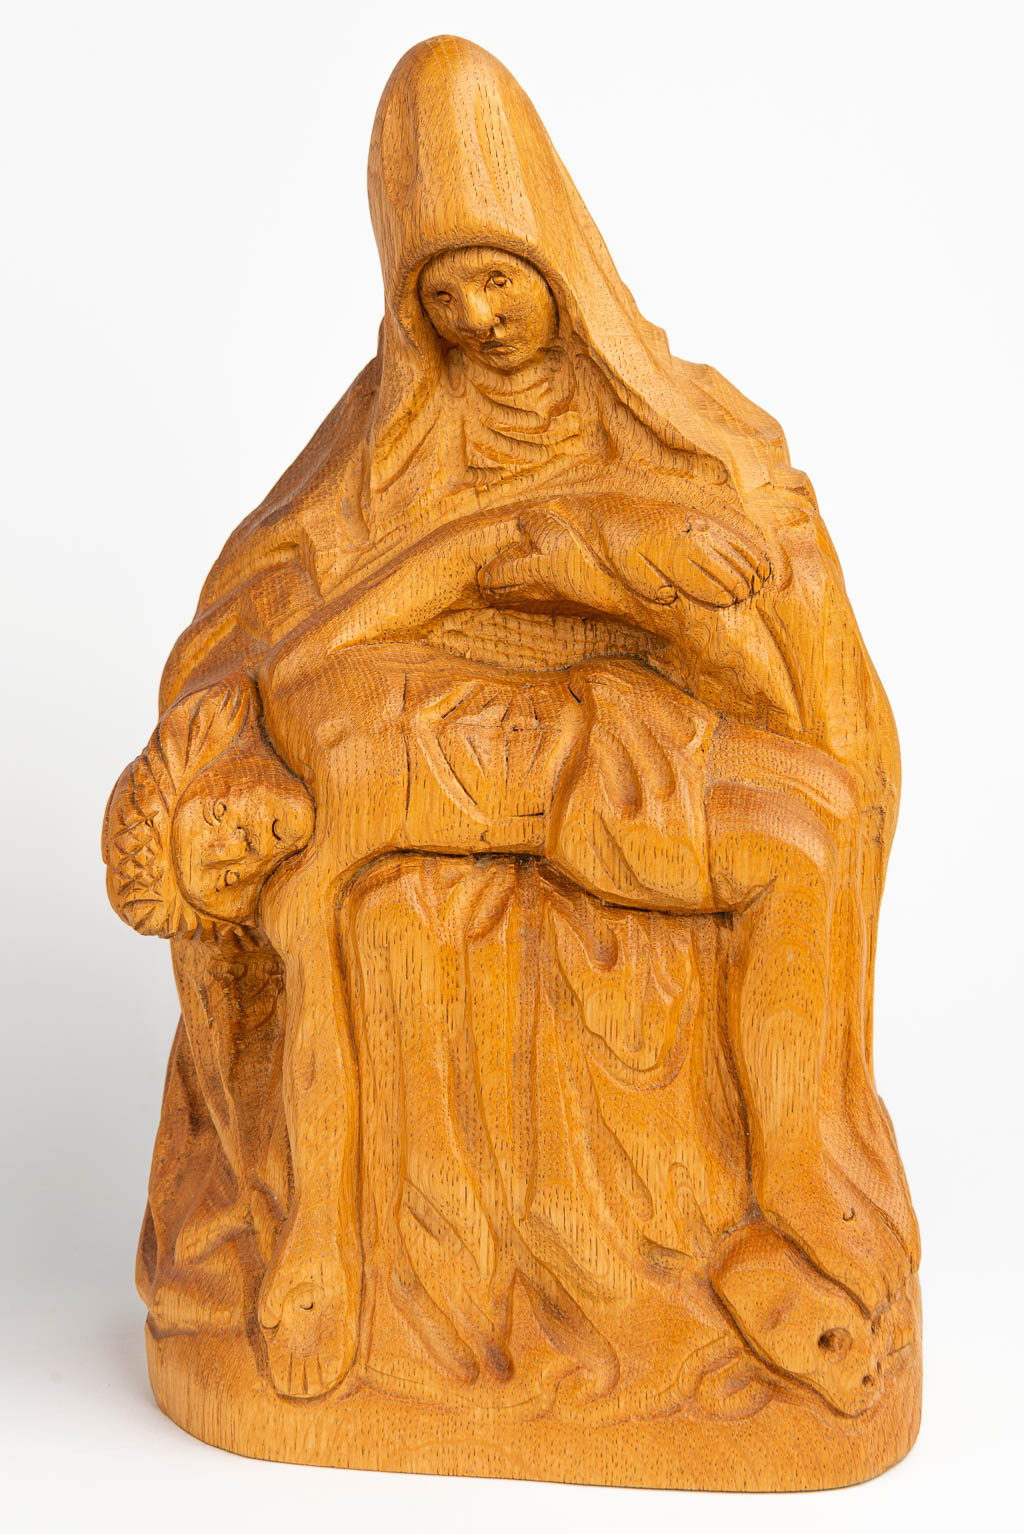 Een collectie van 3 beelden gemaakt uit gesculpteerd hout van Heilige figuren. (H:78cm)